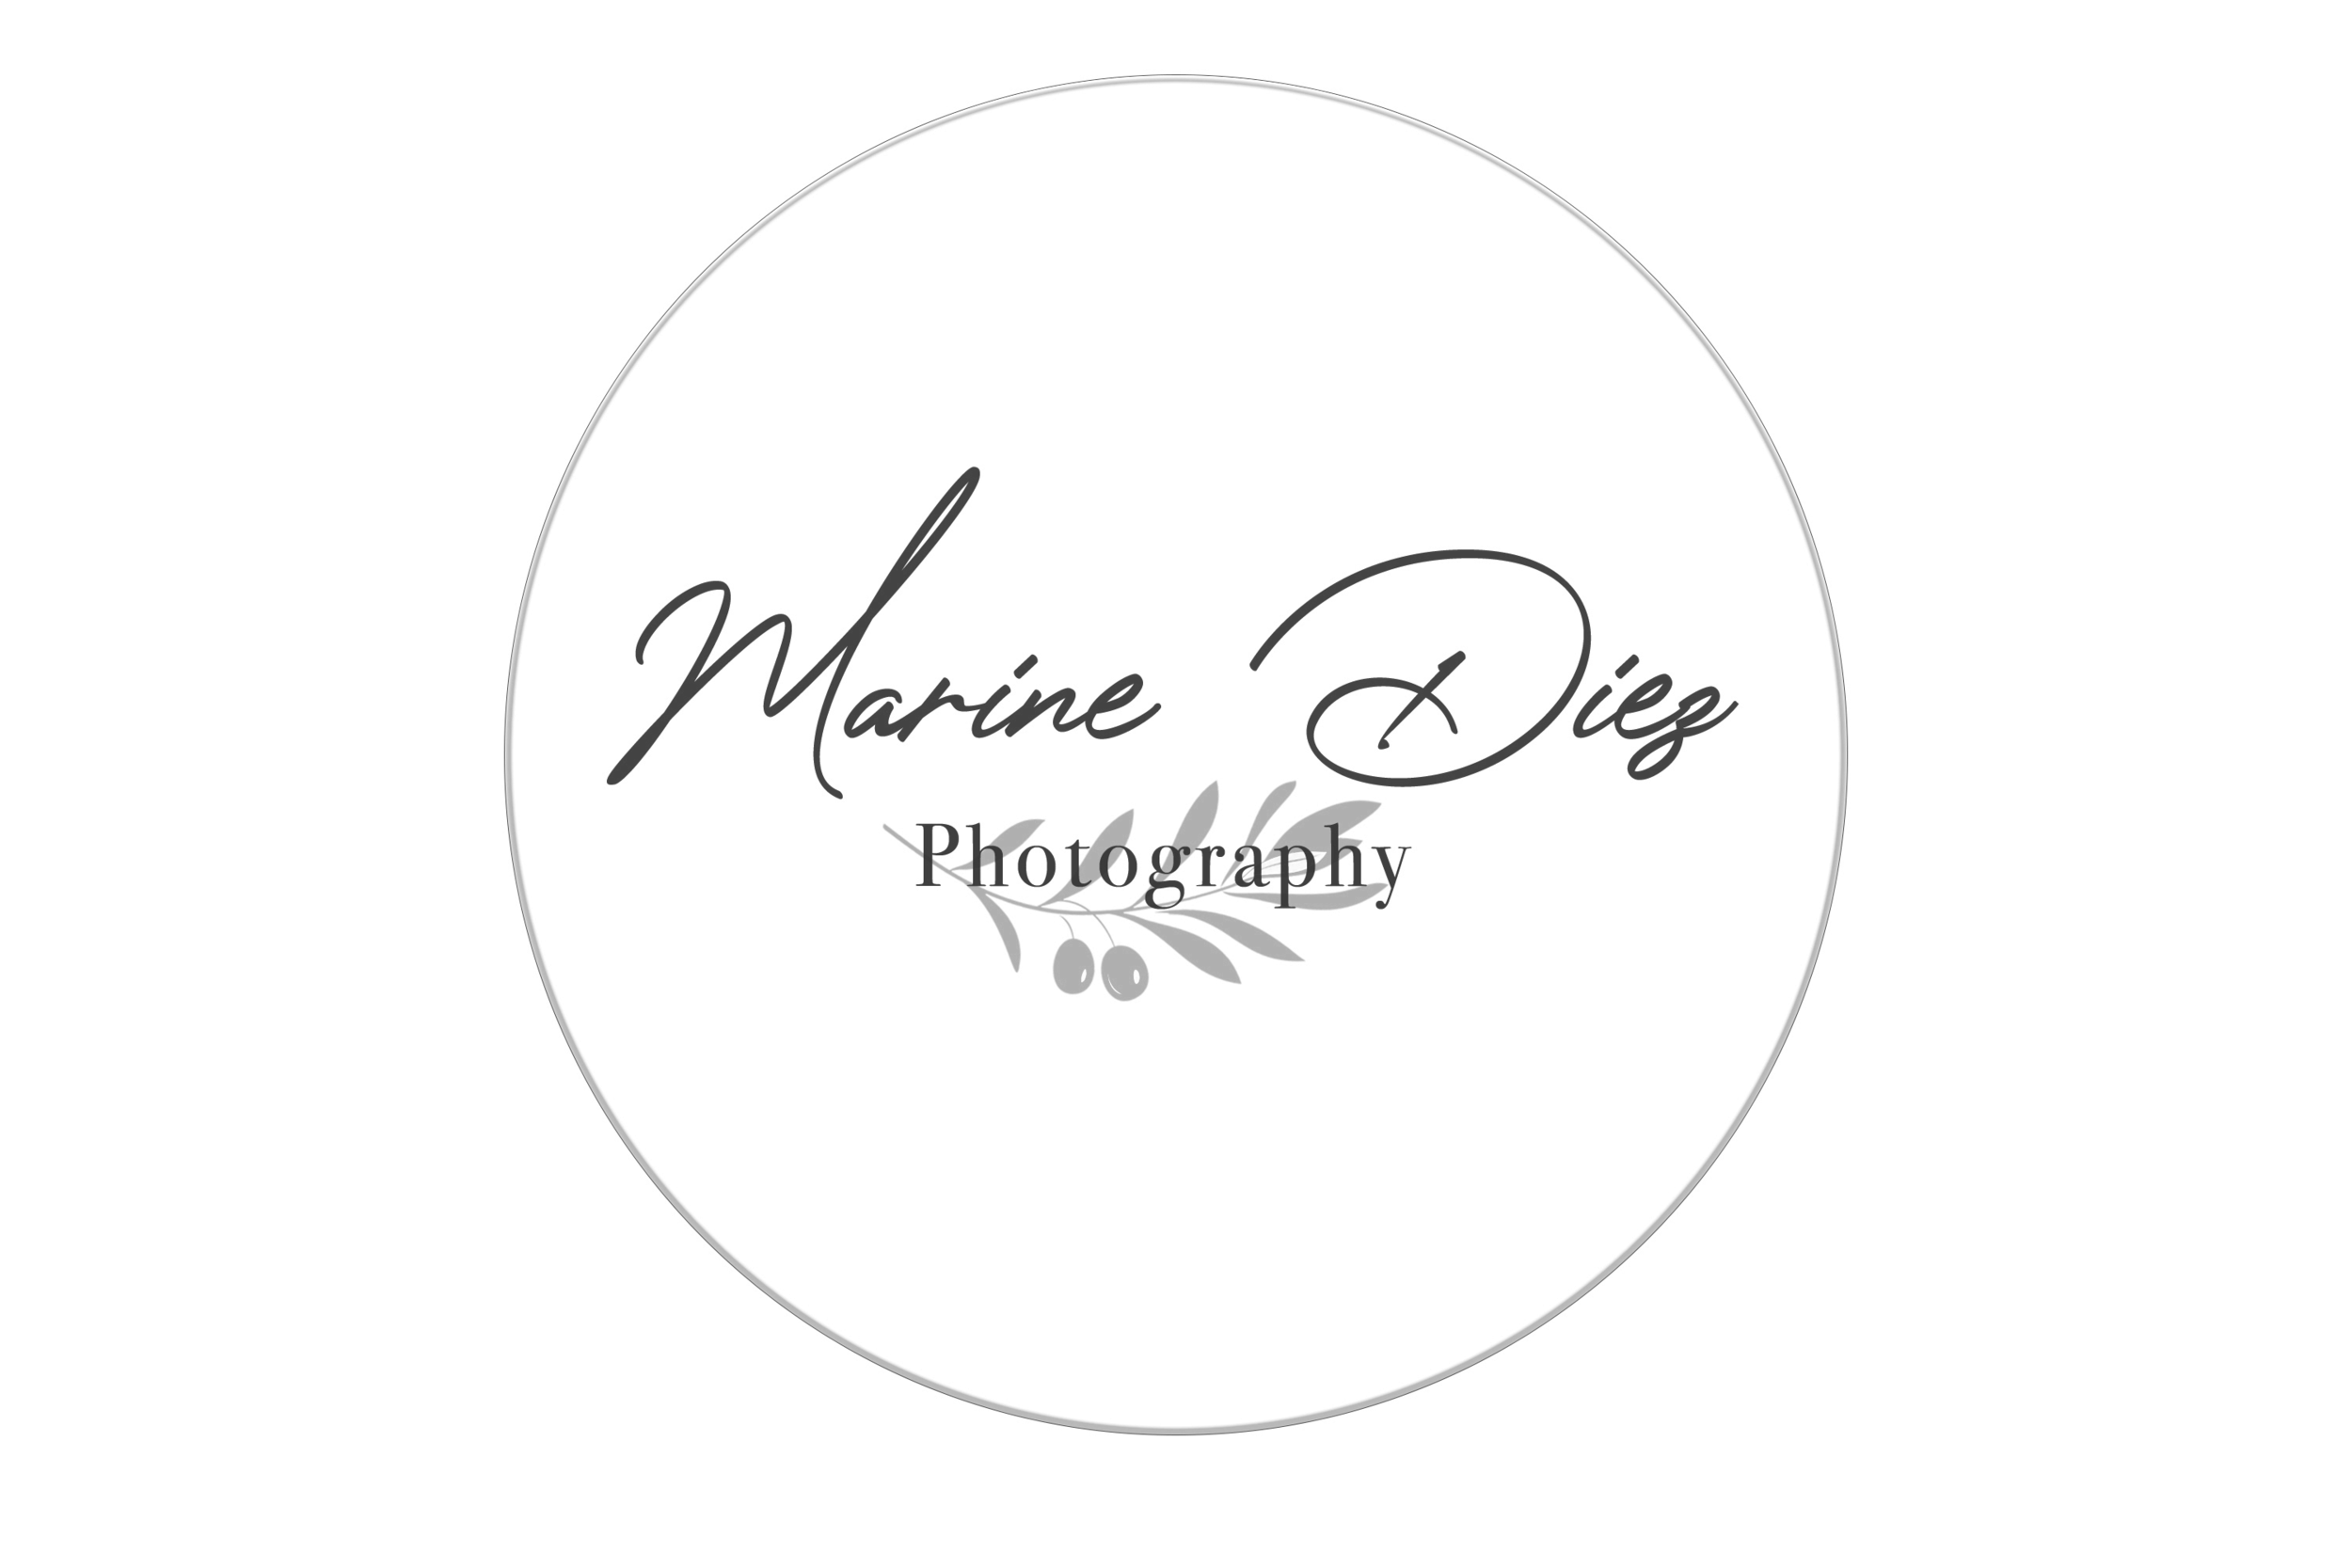 Marine Diez Photographie - logo.png